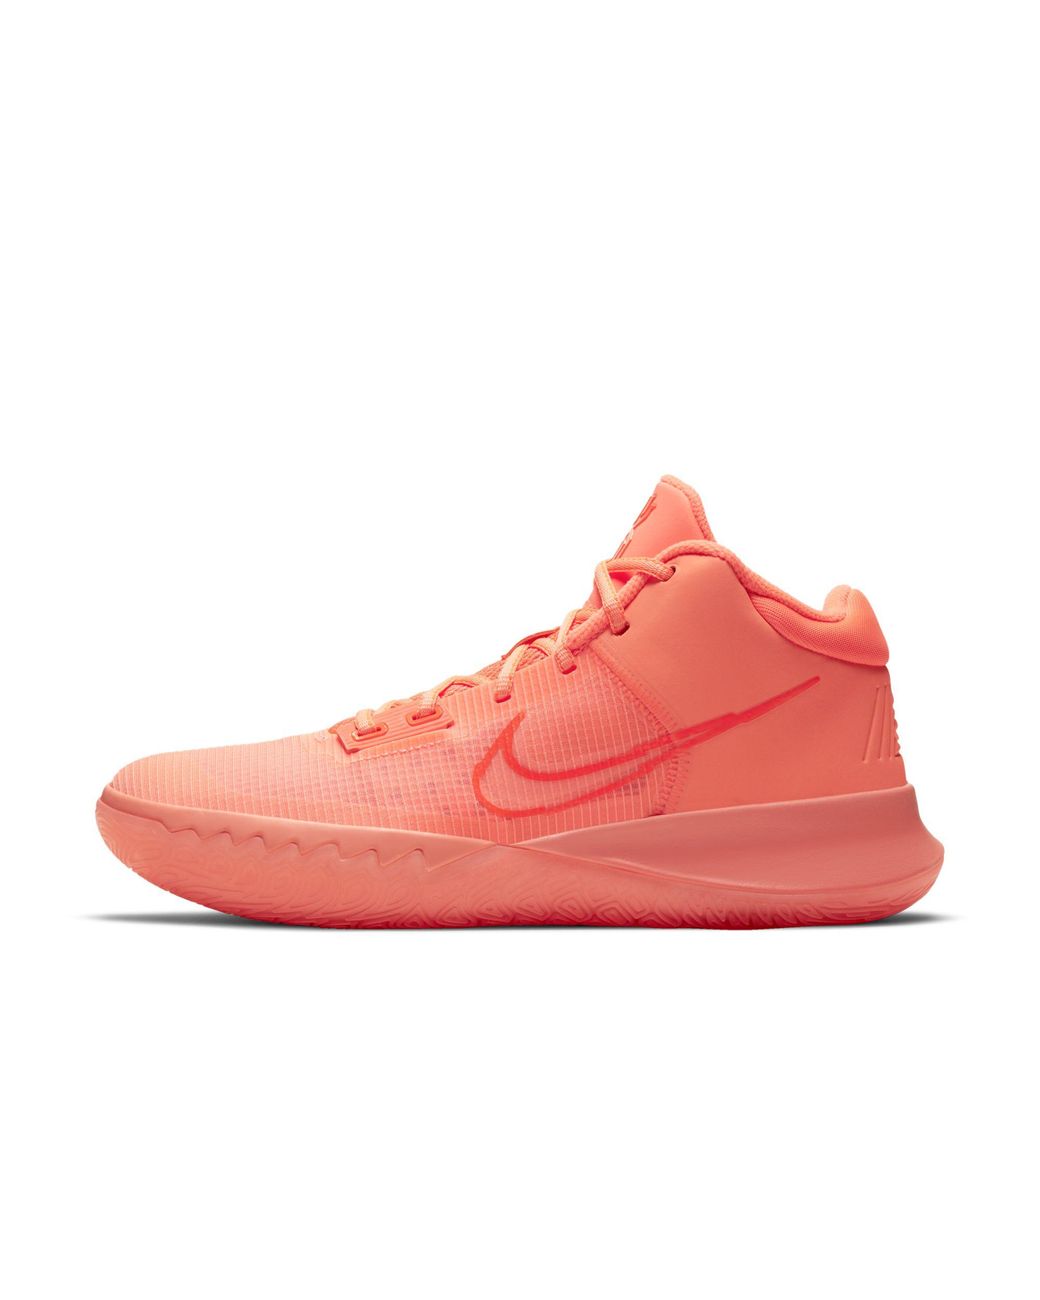 Nike Kyrie Flytrap 4 Basketball Shoe in Orange | Lyst Australia